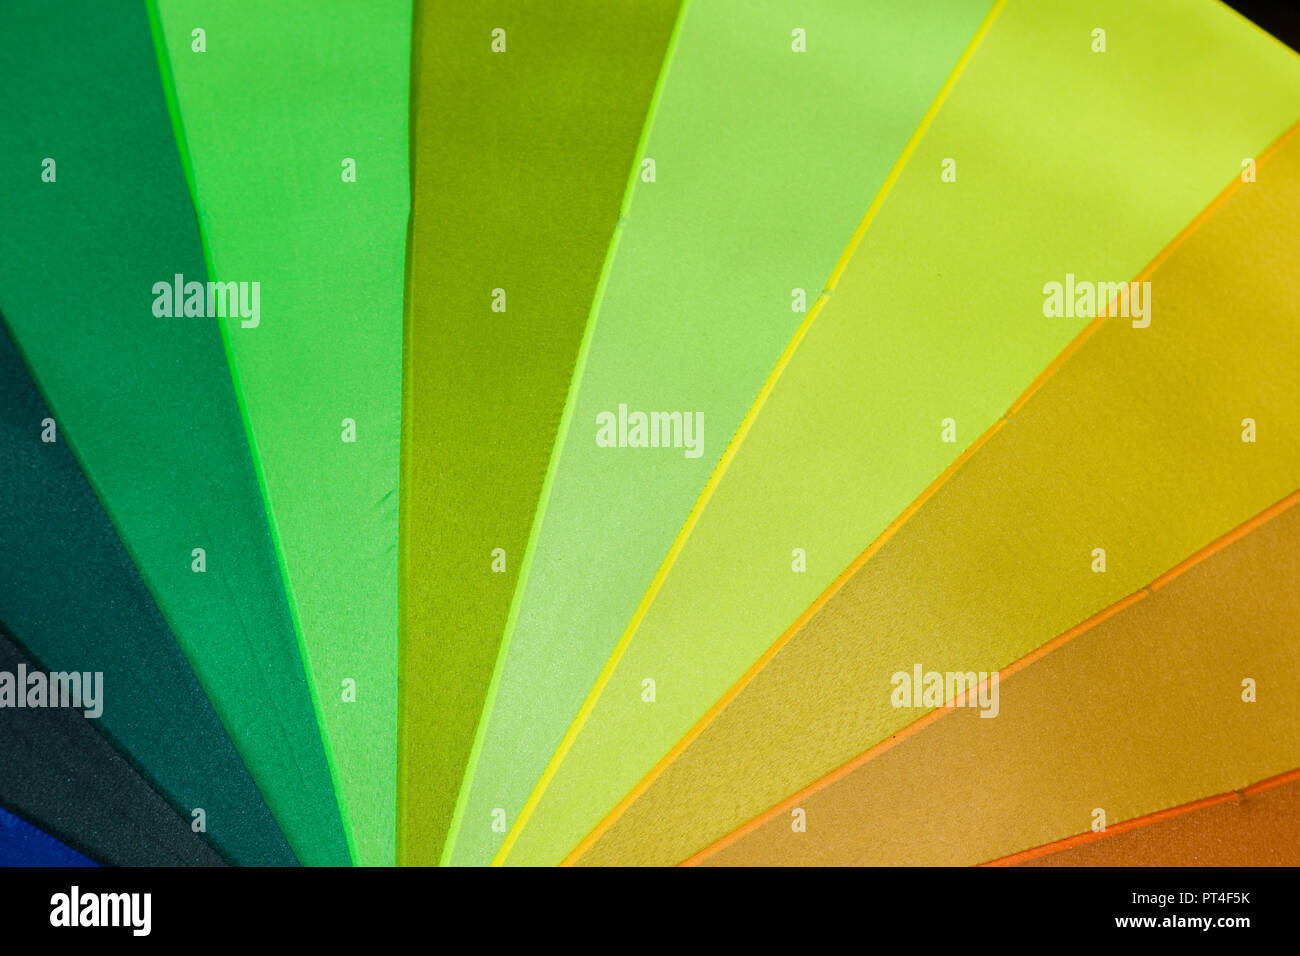 Résumé motif triangle géométrique en plusieurs couleurs arc-en-ciel lumineux Banque D'Images